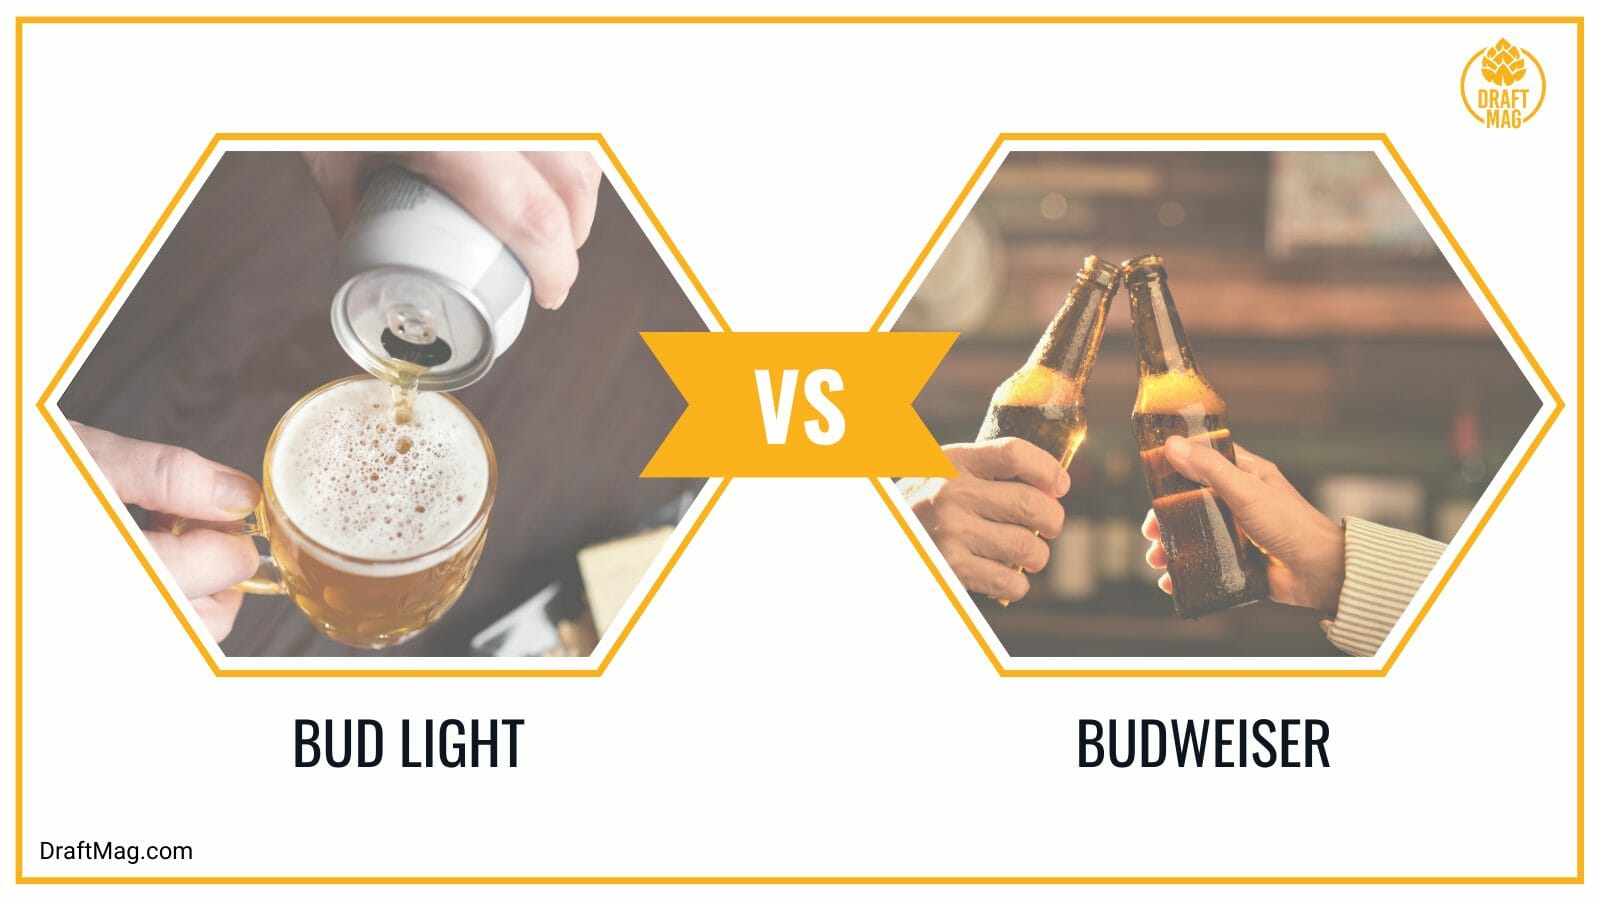 Bud light vs budweiser